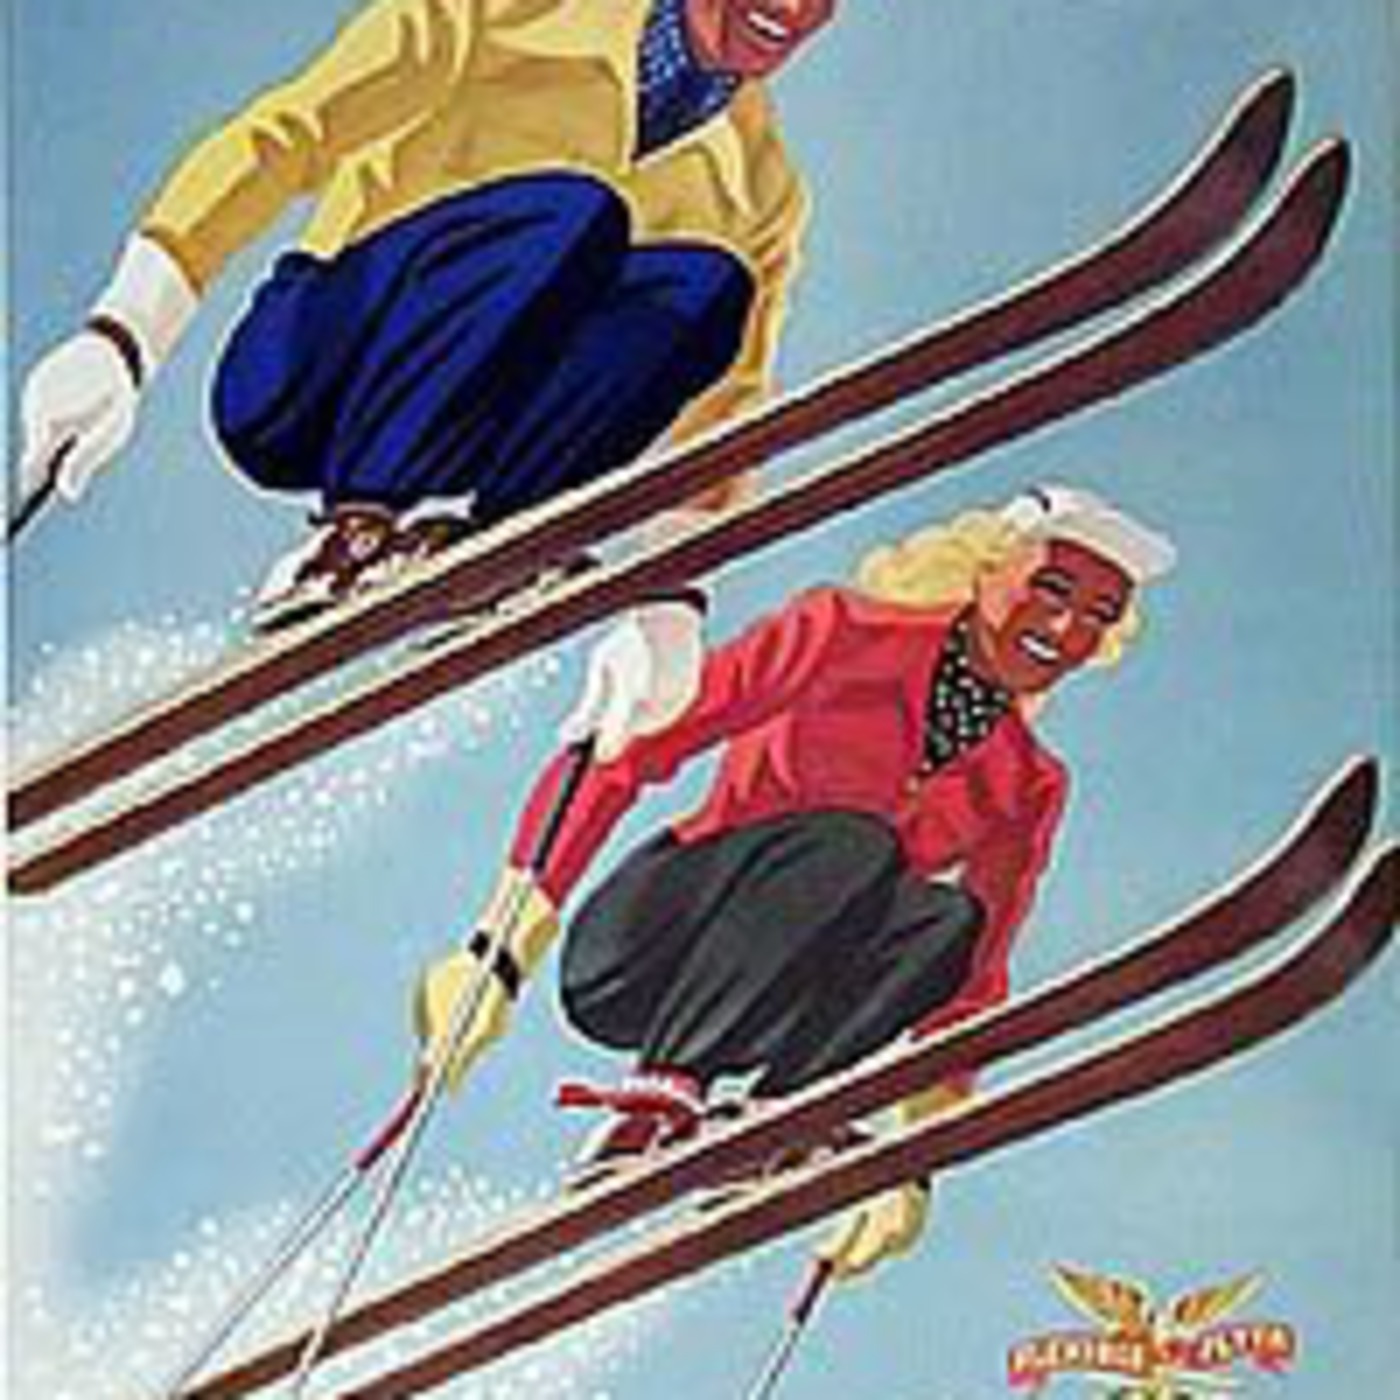 Brettl-Hupfers Ski Club